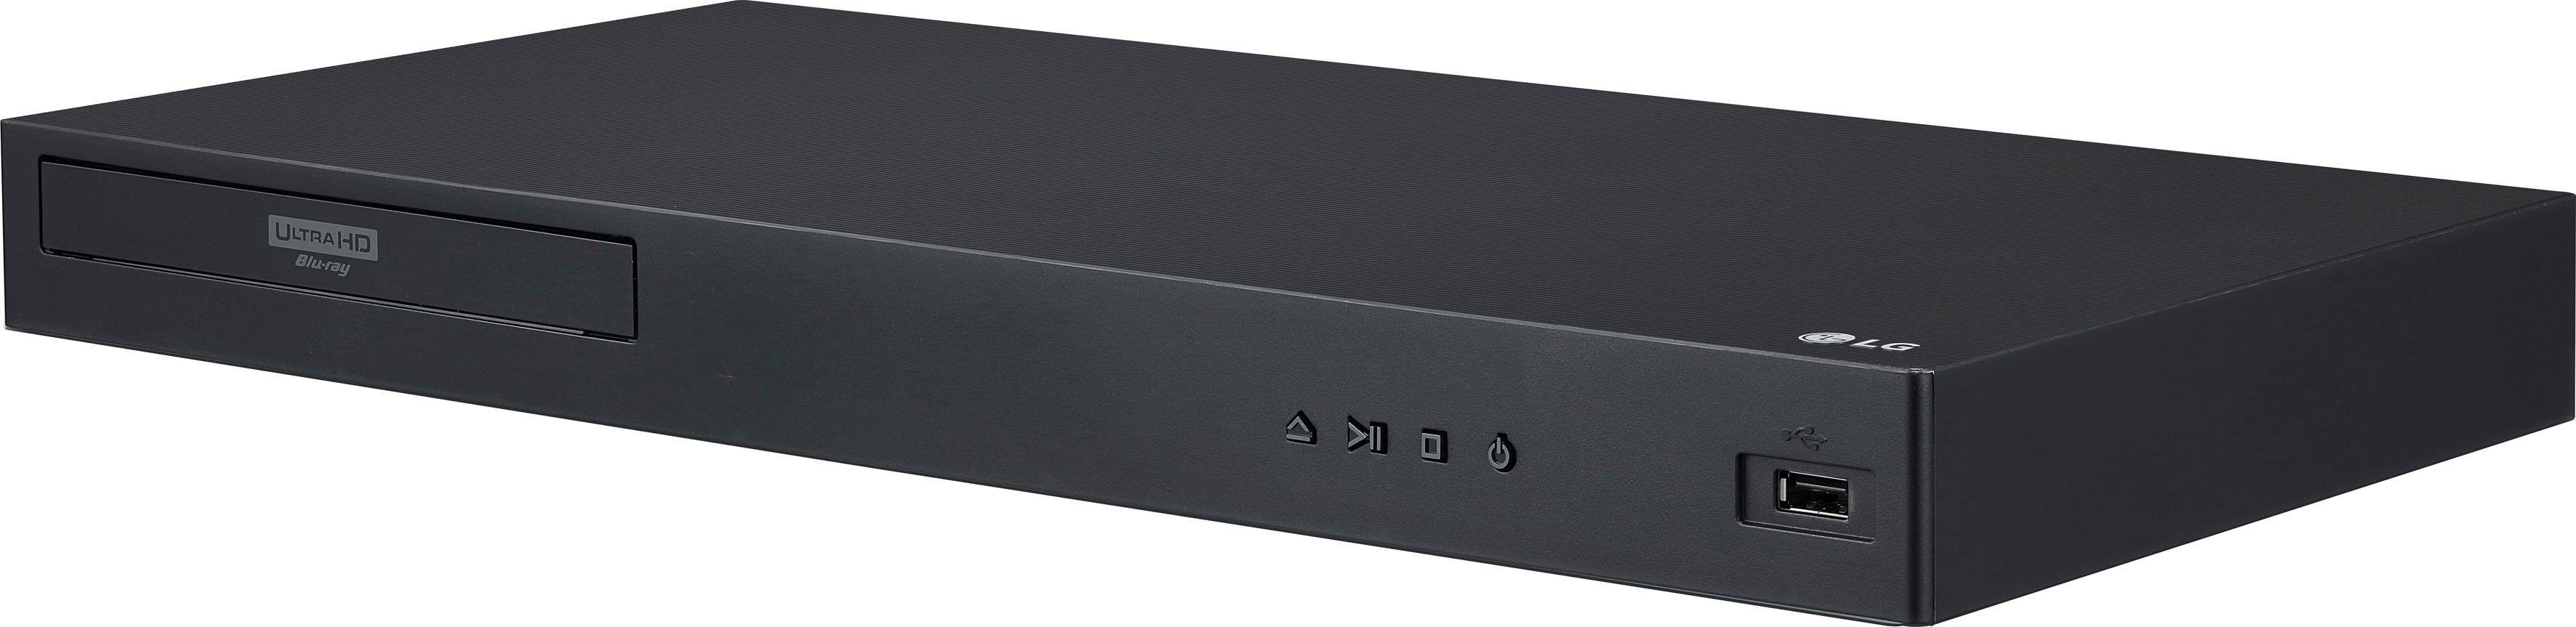 LG UBK90 Blu-ray-Player (4k Ultra HD, 4K Upscaling) WLAN